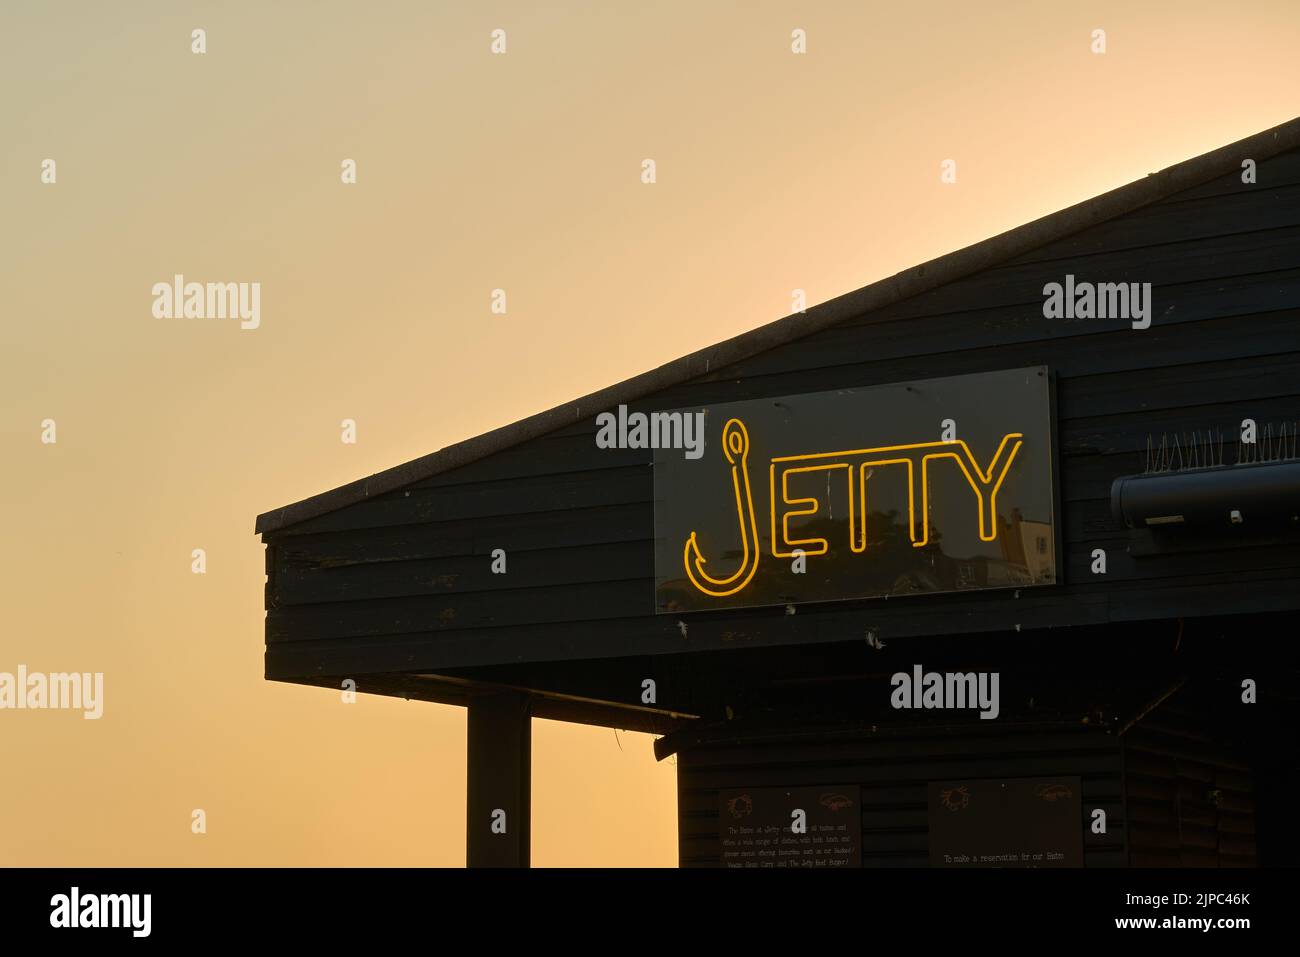 Le restaurant Jetty en début de matinée à Broadescaliers, Thanet, Kent, Royaume-Uni Banque D'Images